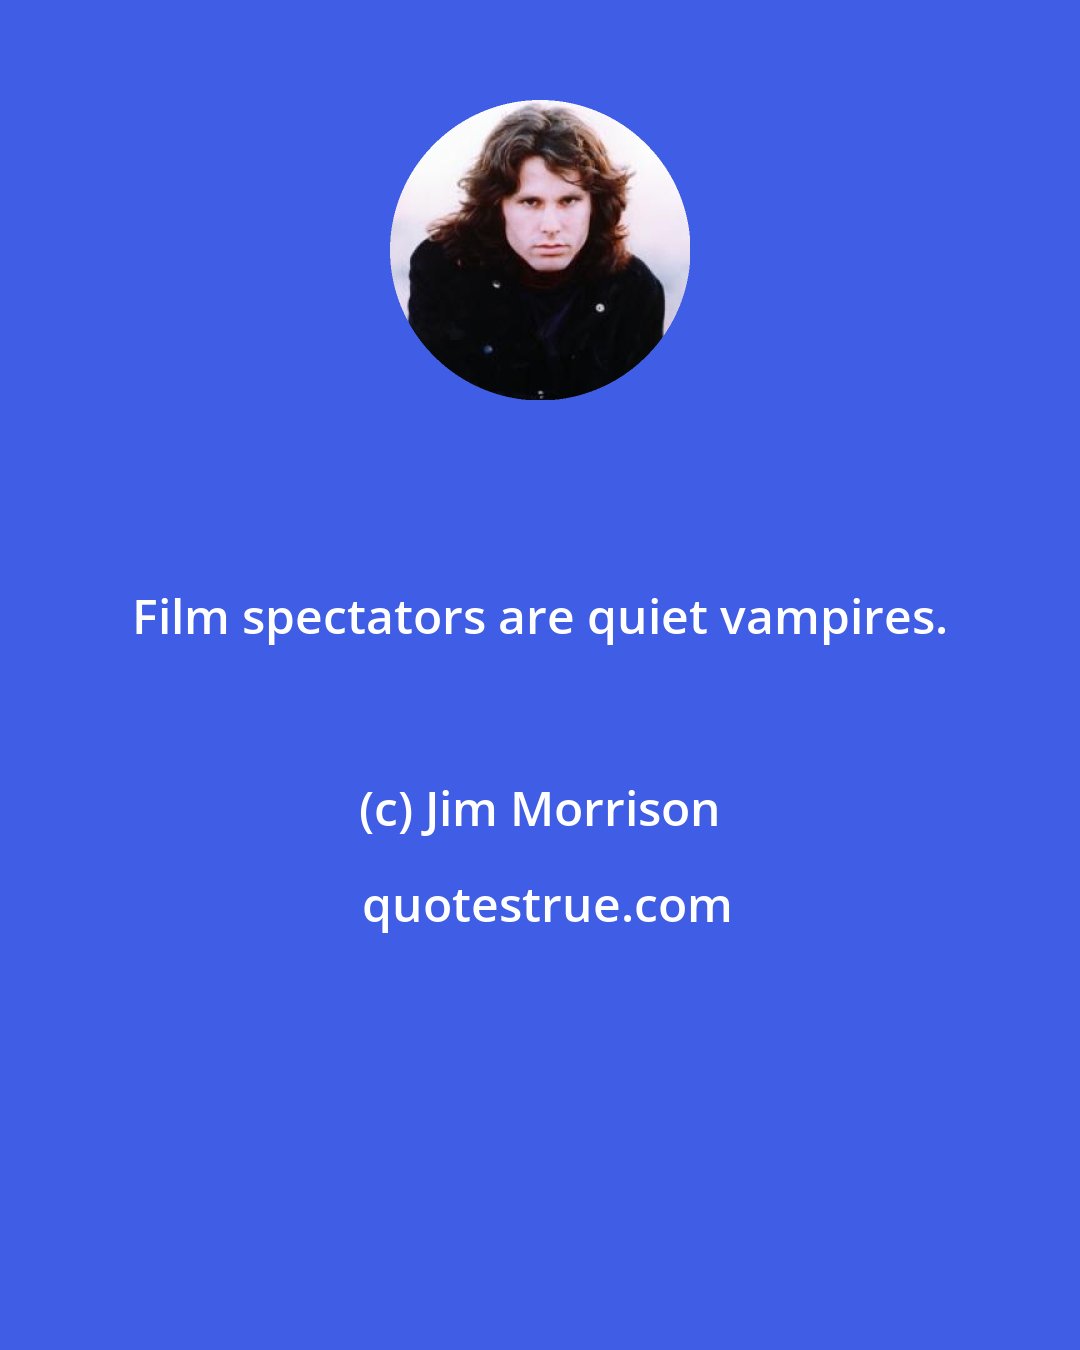 Jim Morrison: Film spectators are quiet vampires.